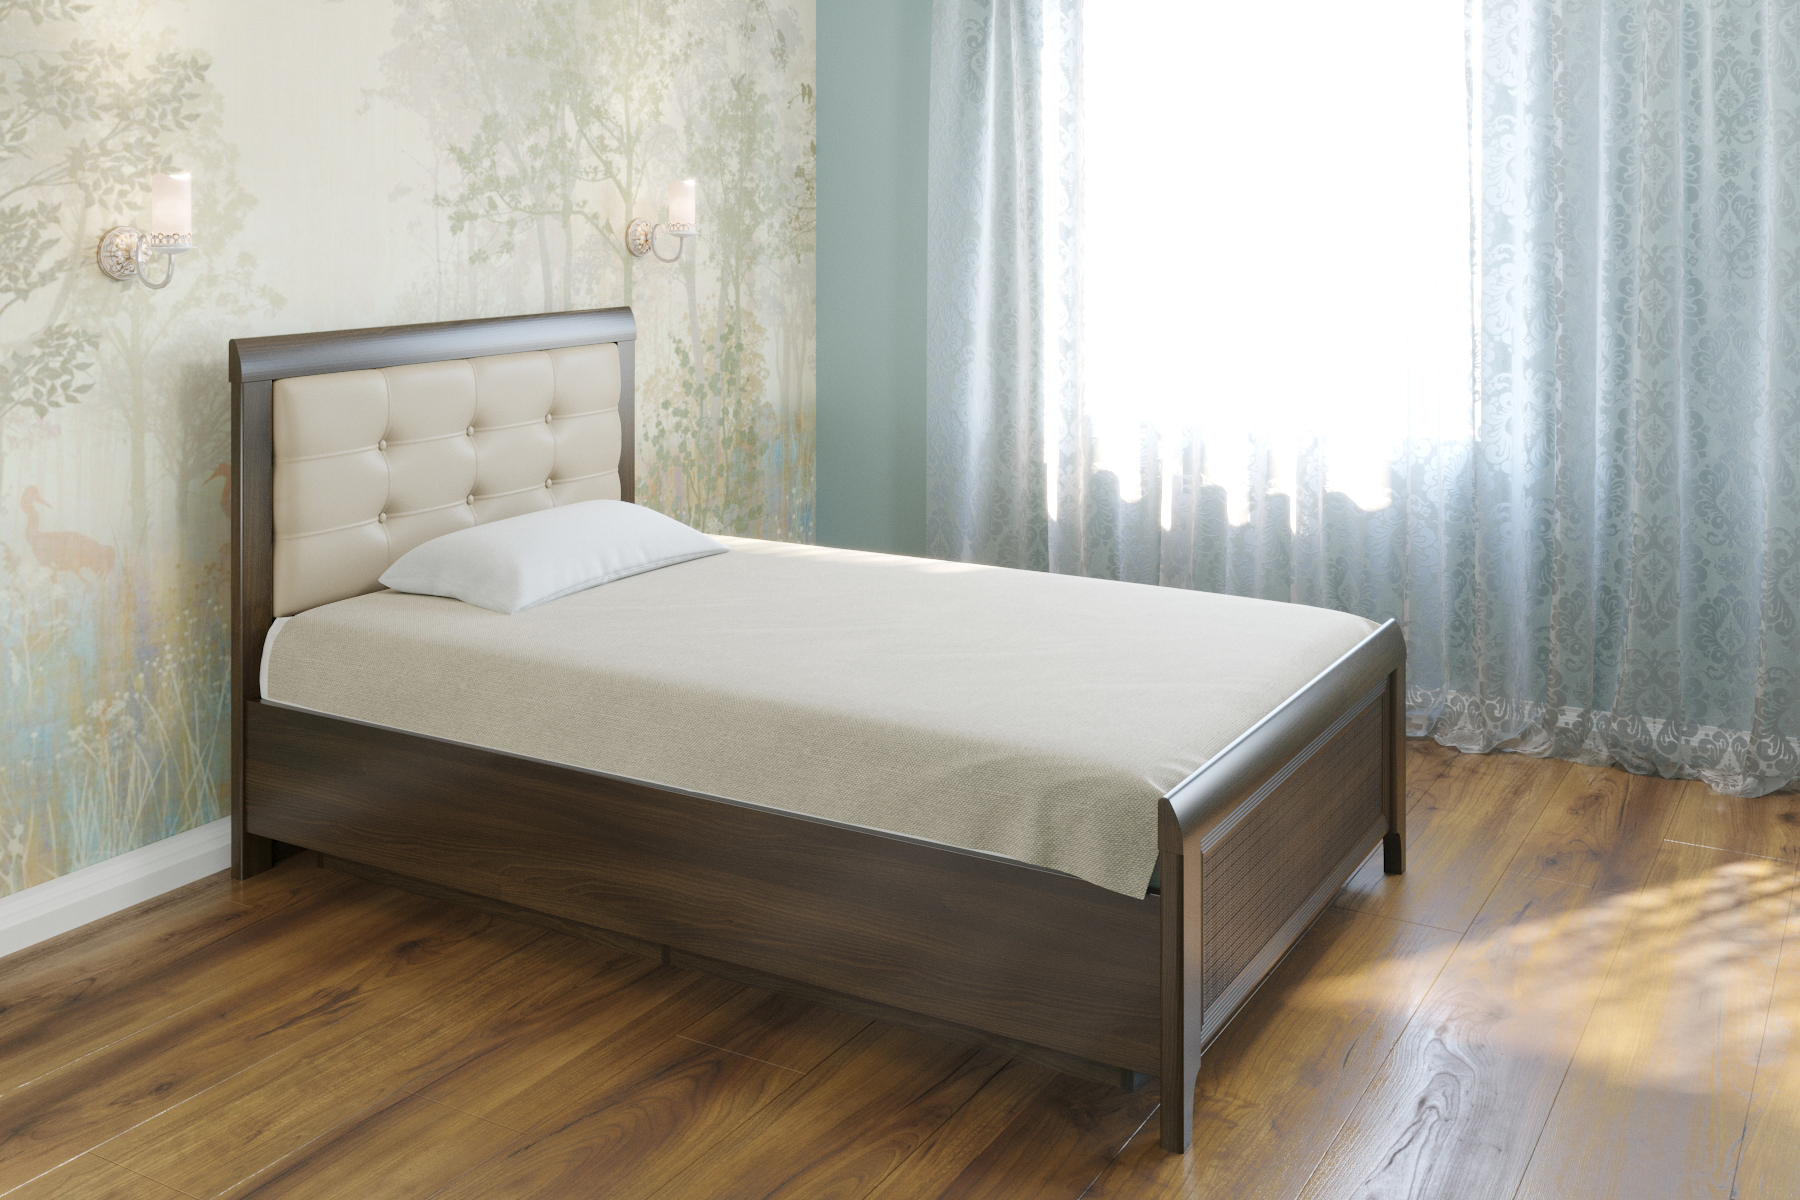 Полуторная кровать (1,4x2,0) КР-1032 – изображение 1